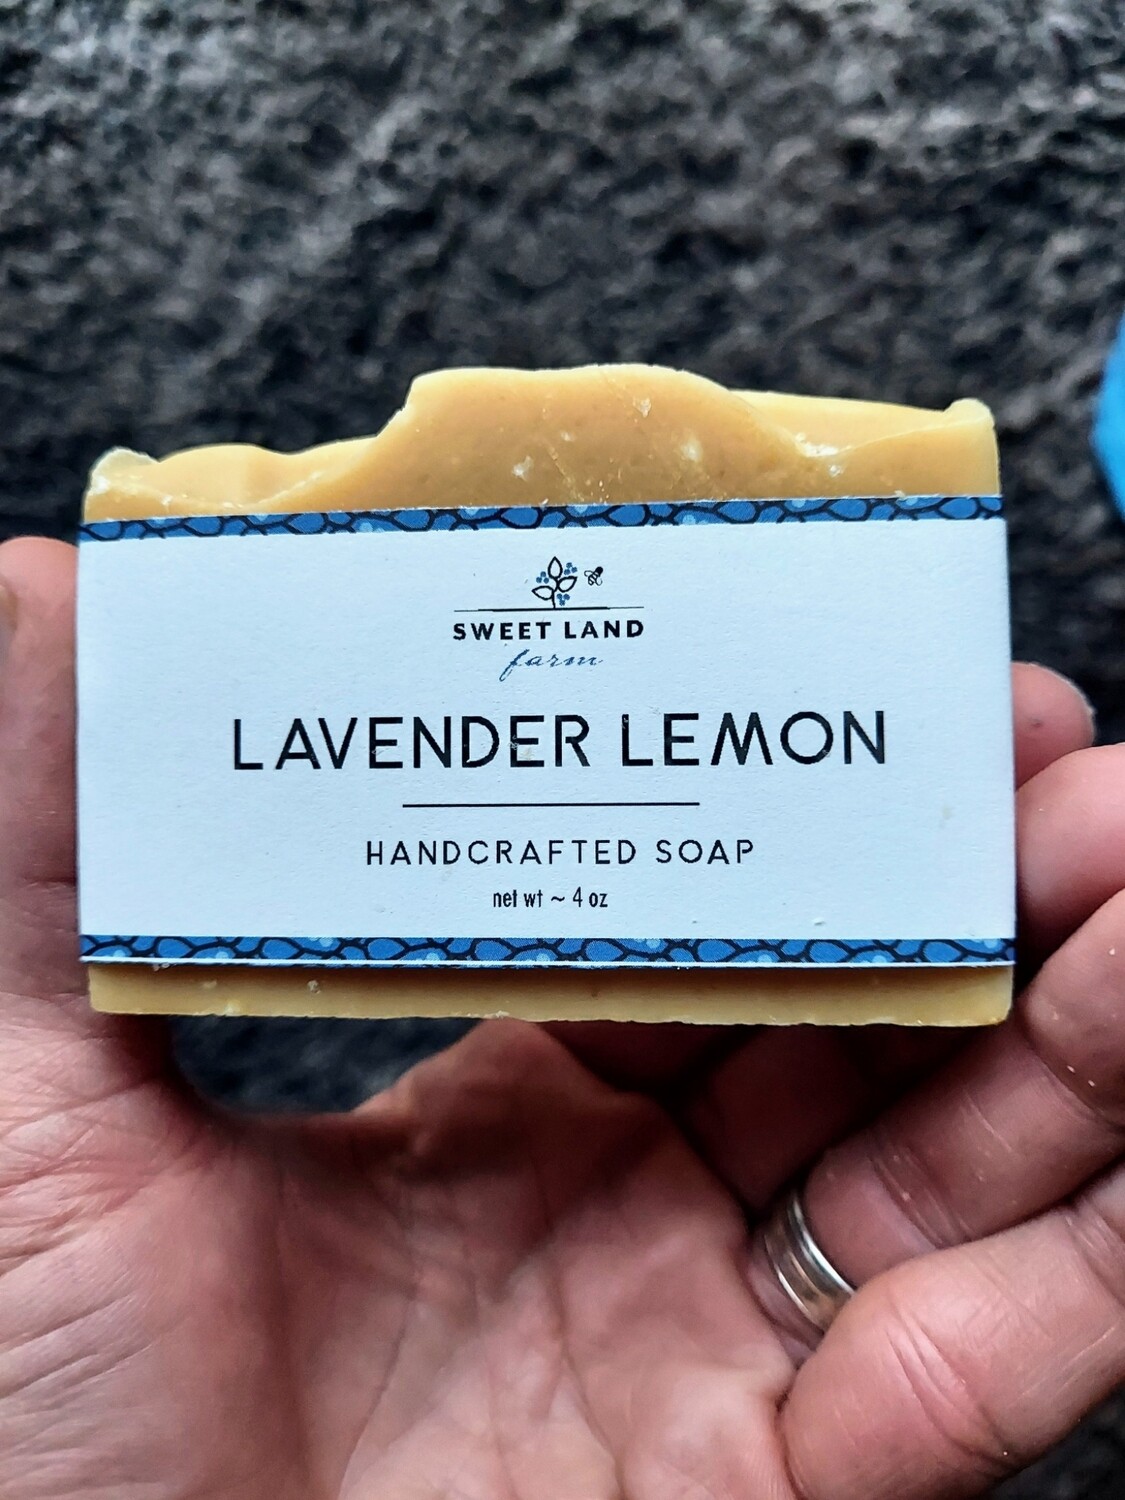 Lavender Lemon Goat Milk Soap